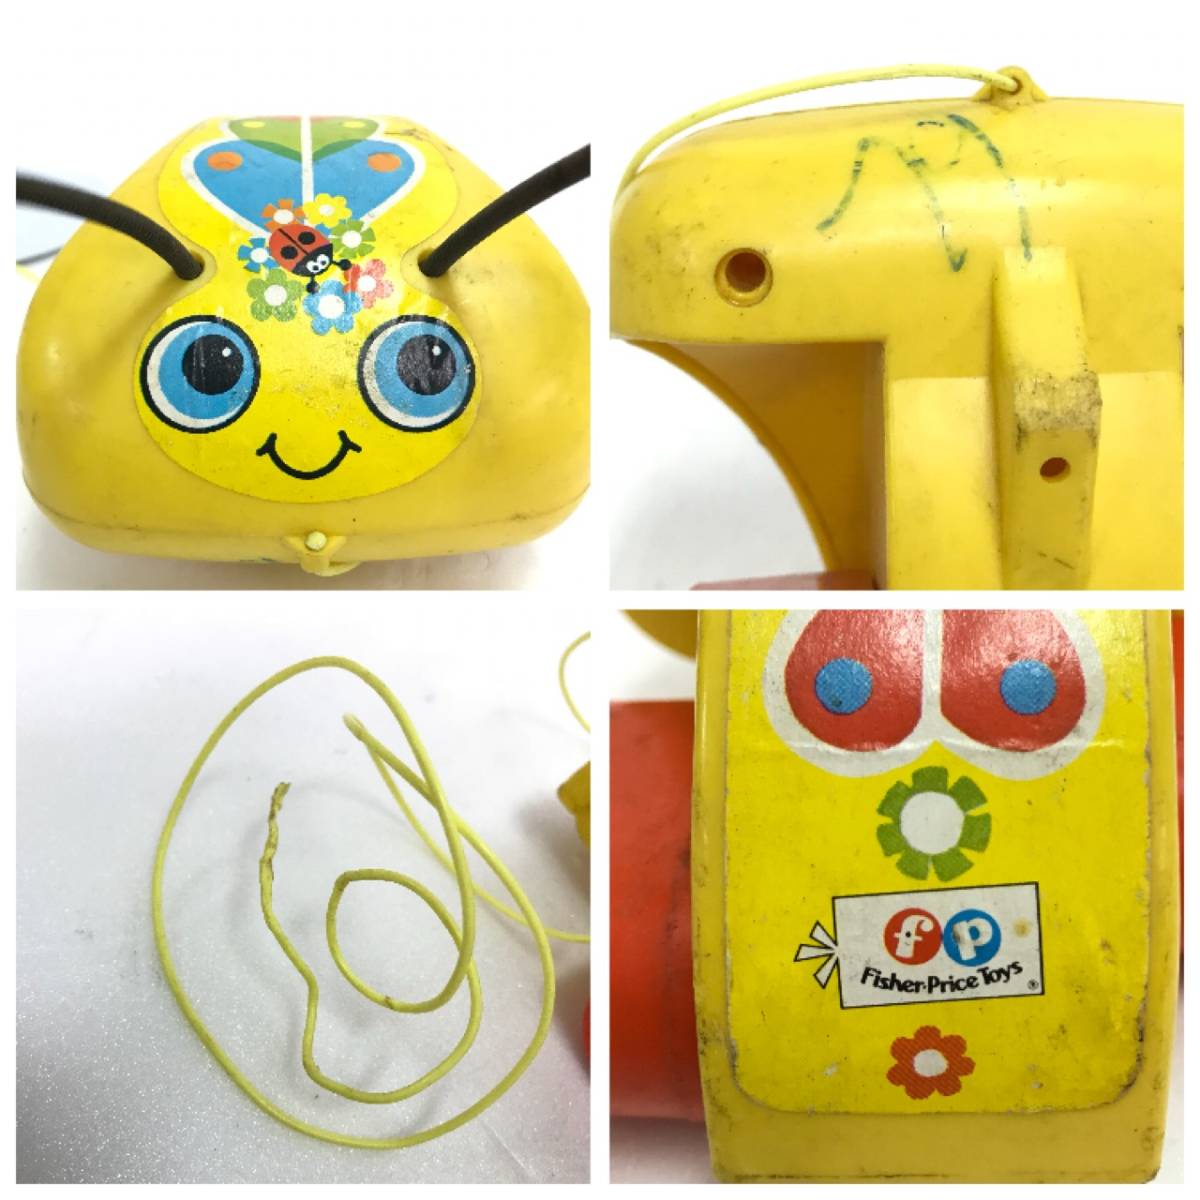 フィッシャー プライス てんとう虫 プルトイ おもちゃ 玩具 Lady Bug レトロ オールド アンティーク ビンテージ FISHER PRICE TOYS D-2259